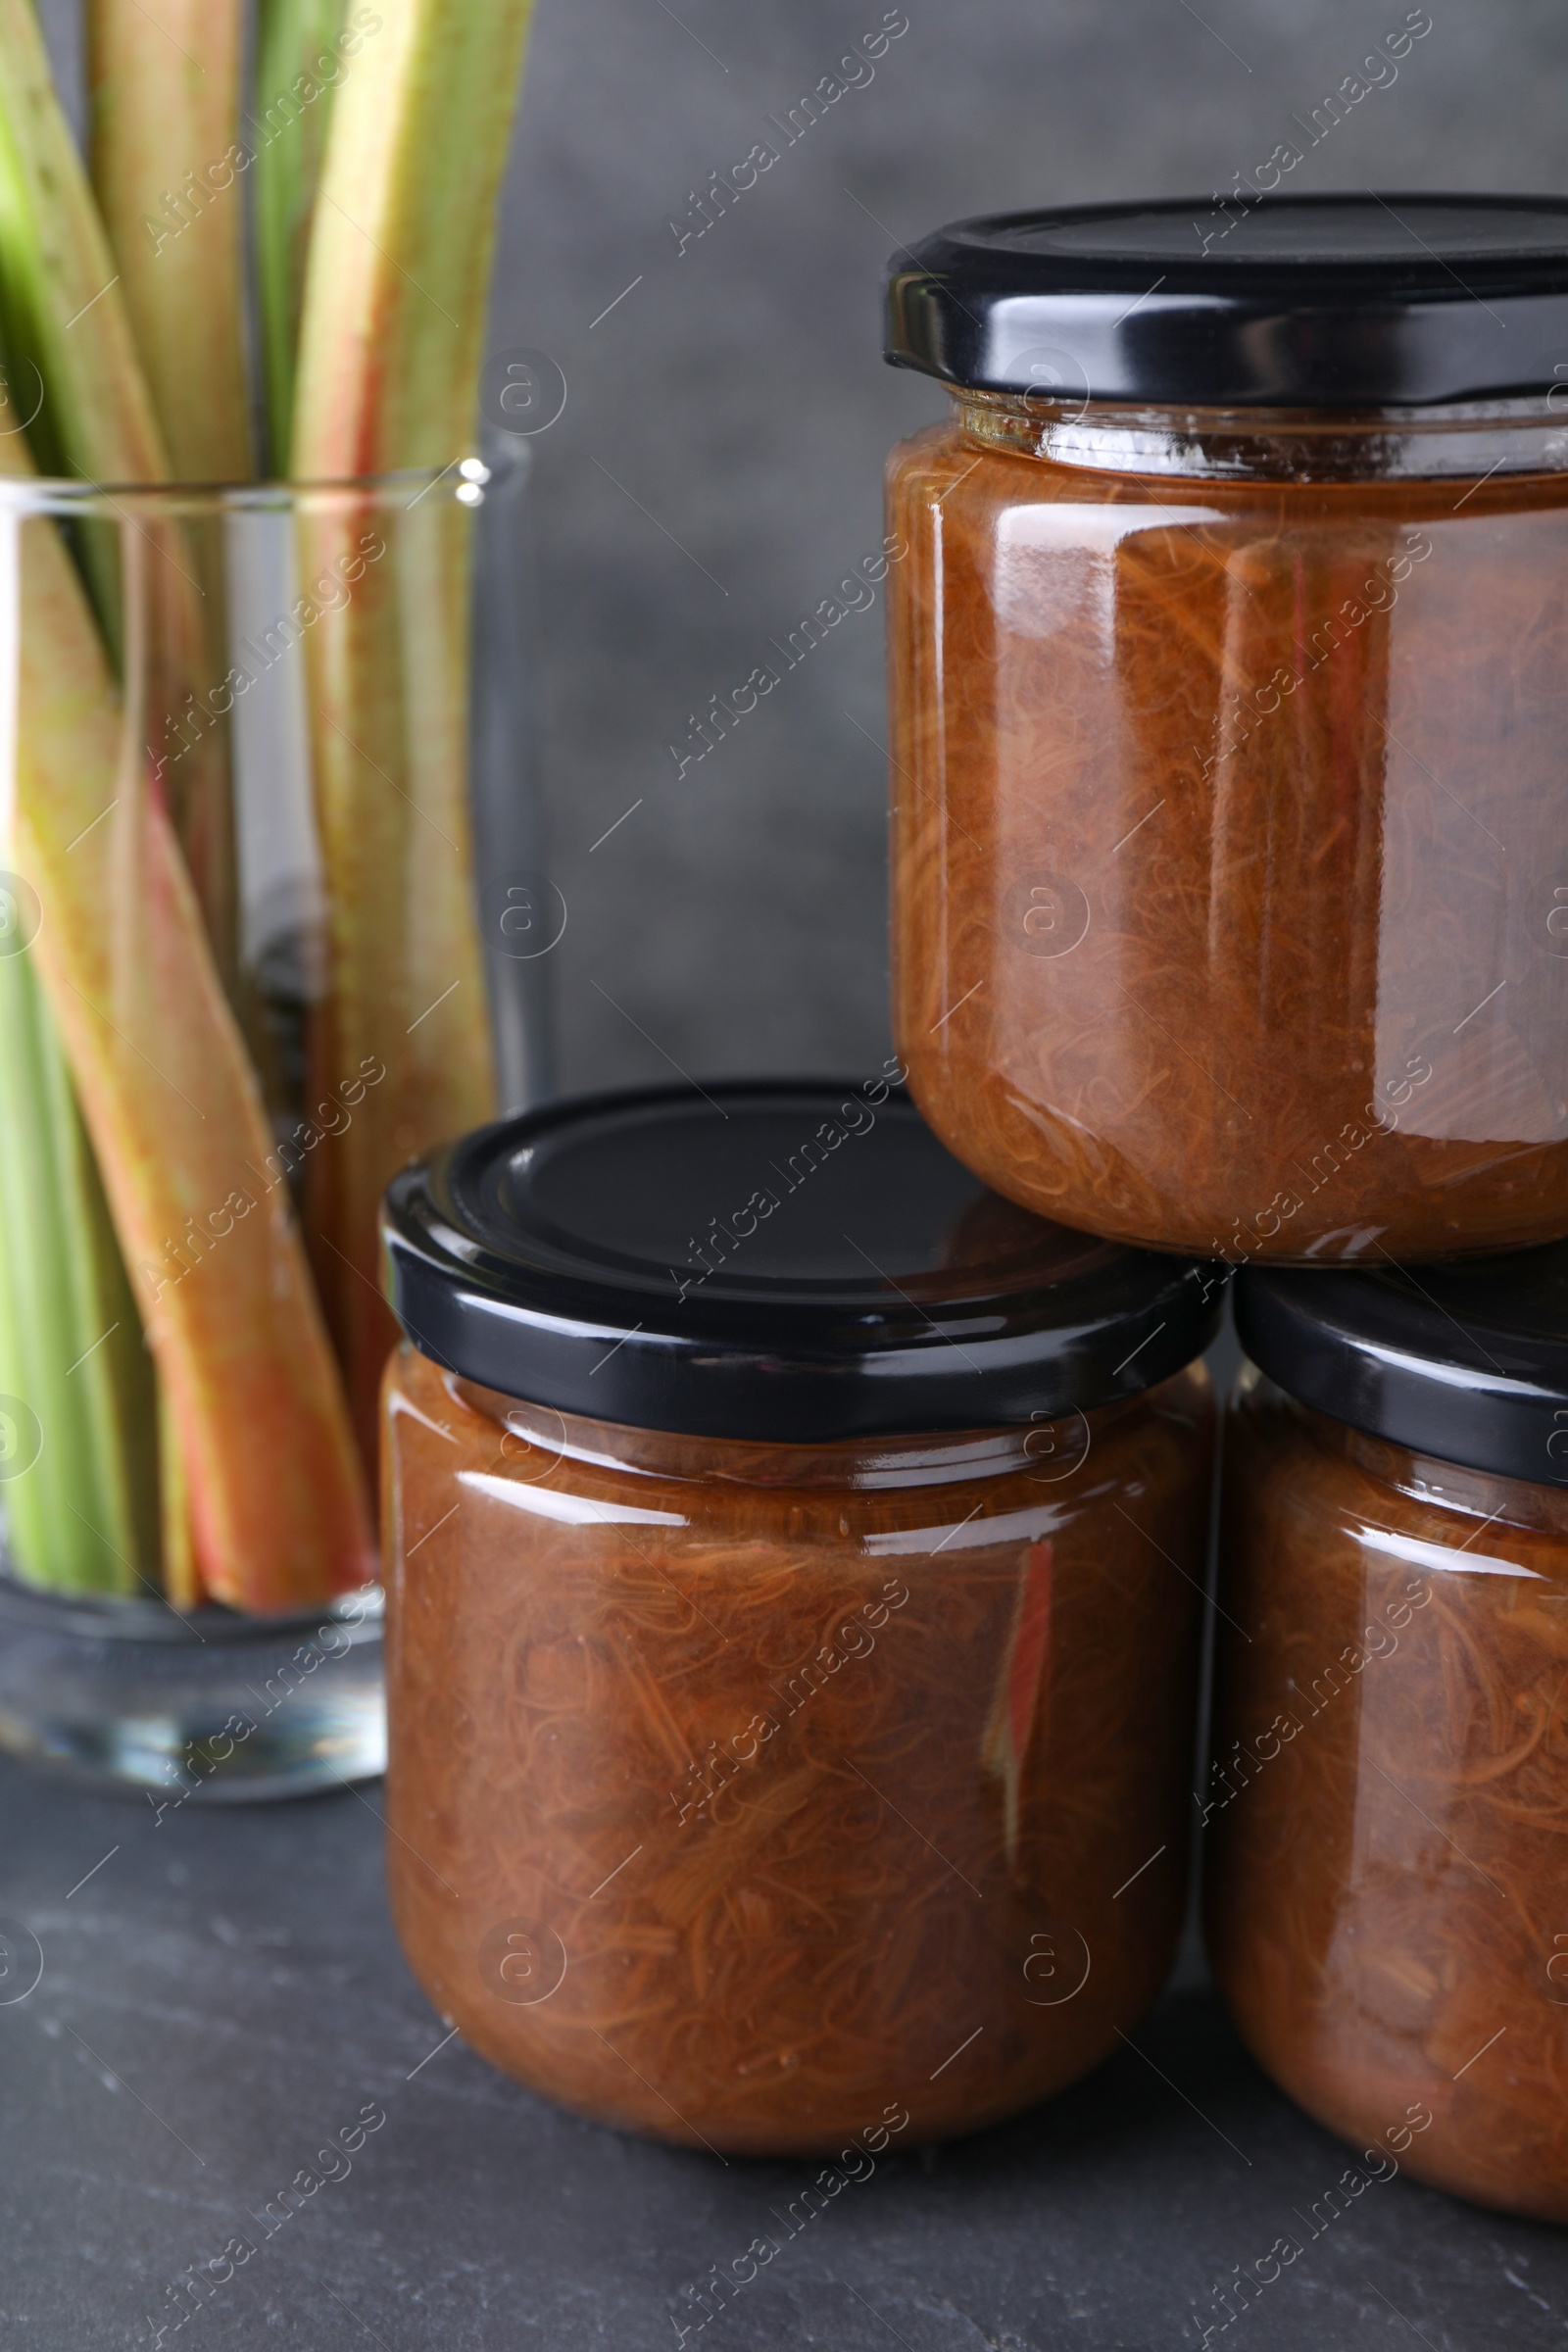 Photo of Jars of tasty rhubarb jam and stalks on grey table, closeup